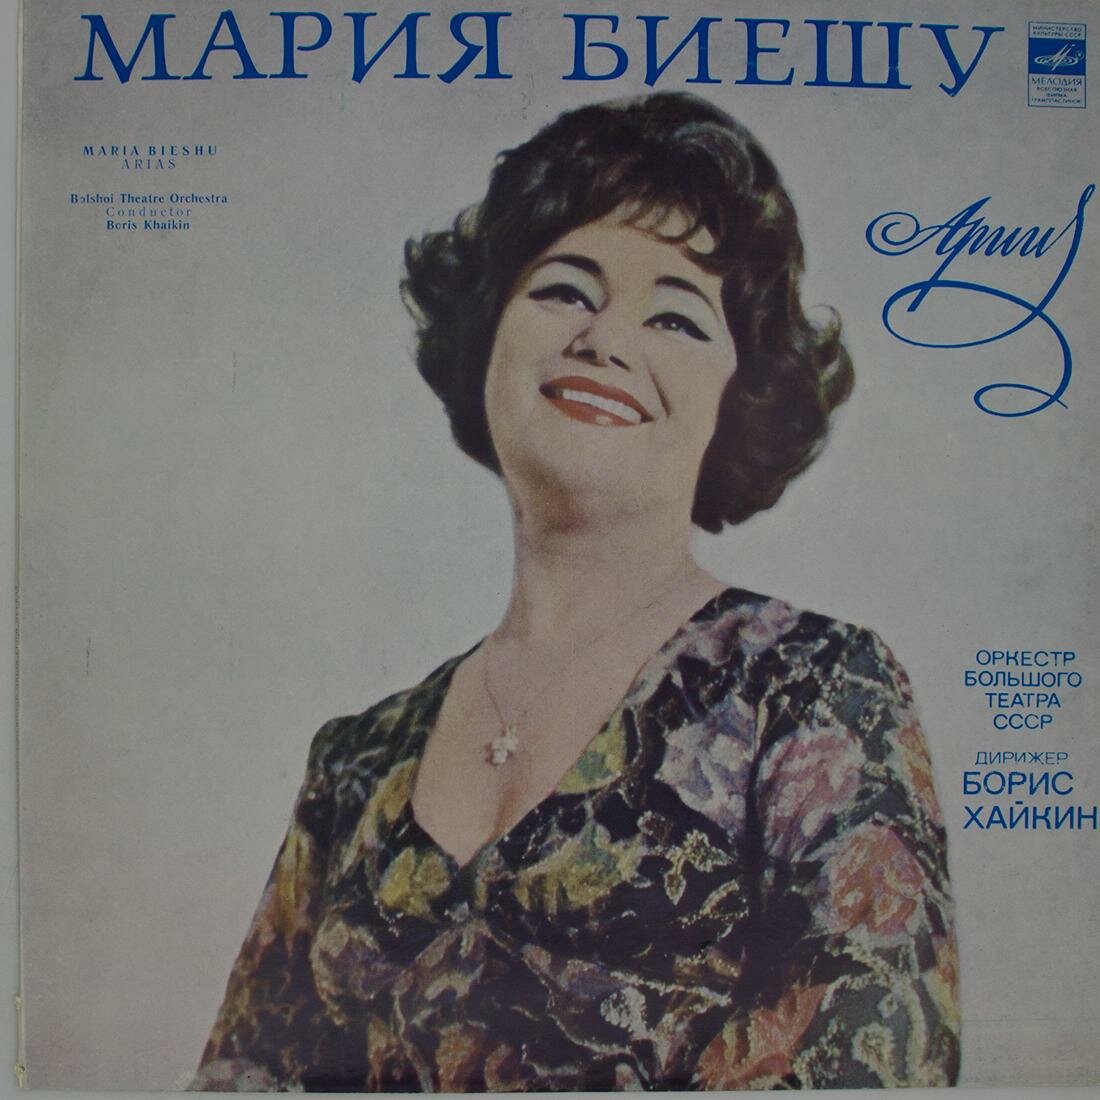 Виниловая пластинка Мария Биешу, Оркестр Большого Театра СС